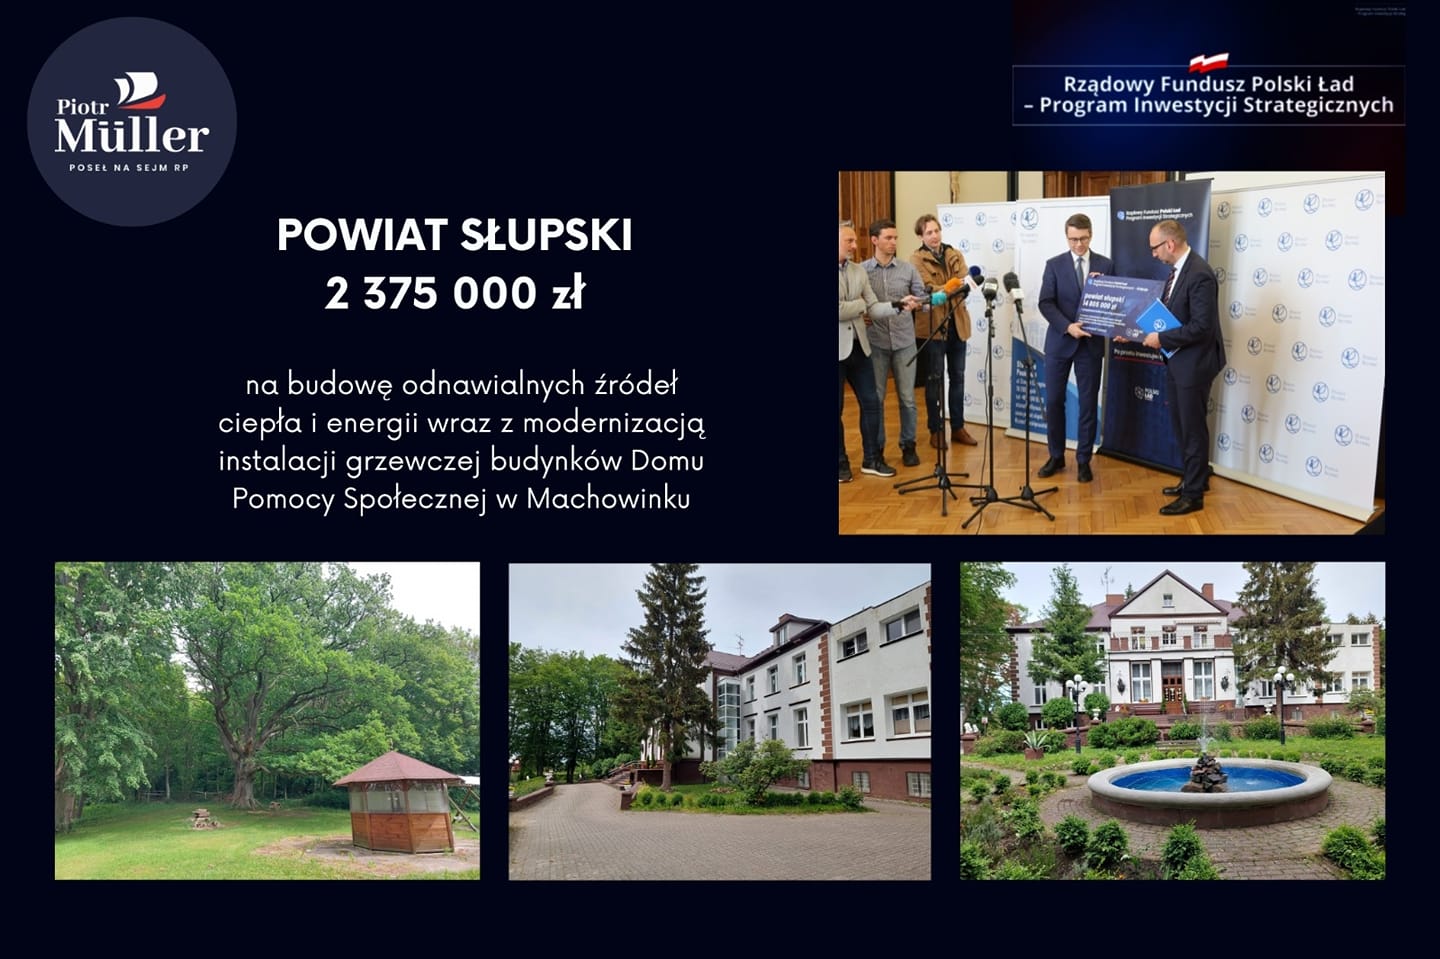 Powiat Słupski otrzymał 14 805 000 zł dofinansowania z Rządowego Programu Inwestycji Strategicznych z czego aż 2 375 000zł na zadanie pn. budowa odnawialnych źródeł ciepła i energii wraz z modernizacją instalacji grzewczej budynków Domu Pomocy Społecznej w Machowinku - Gmina Ustka.